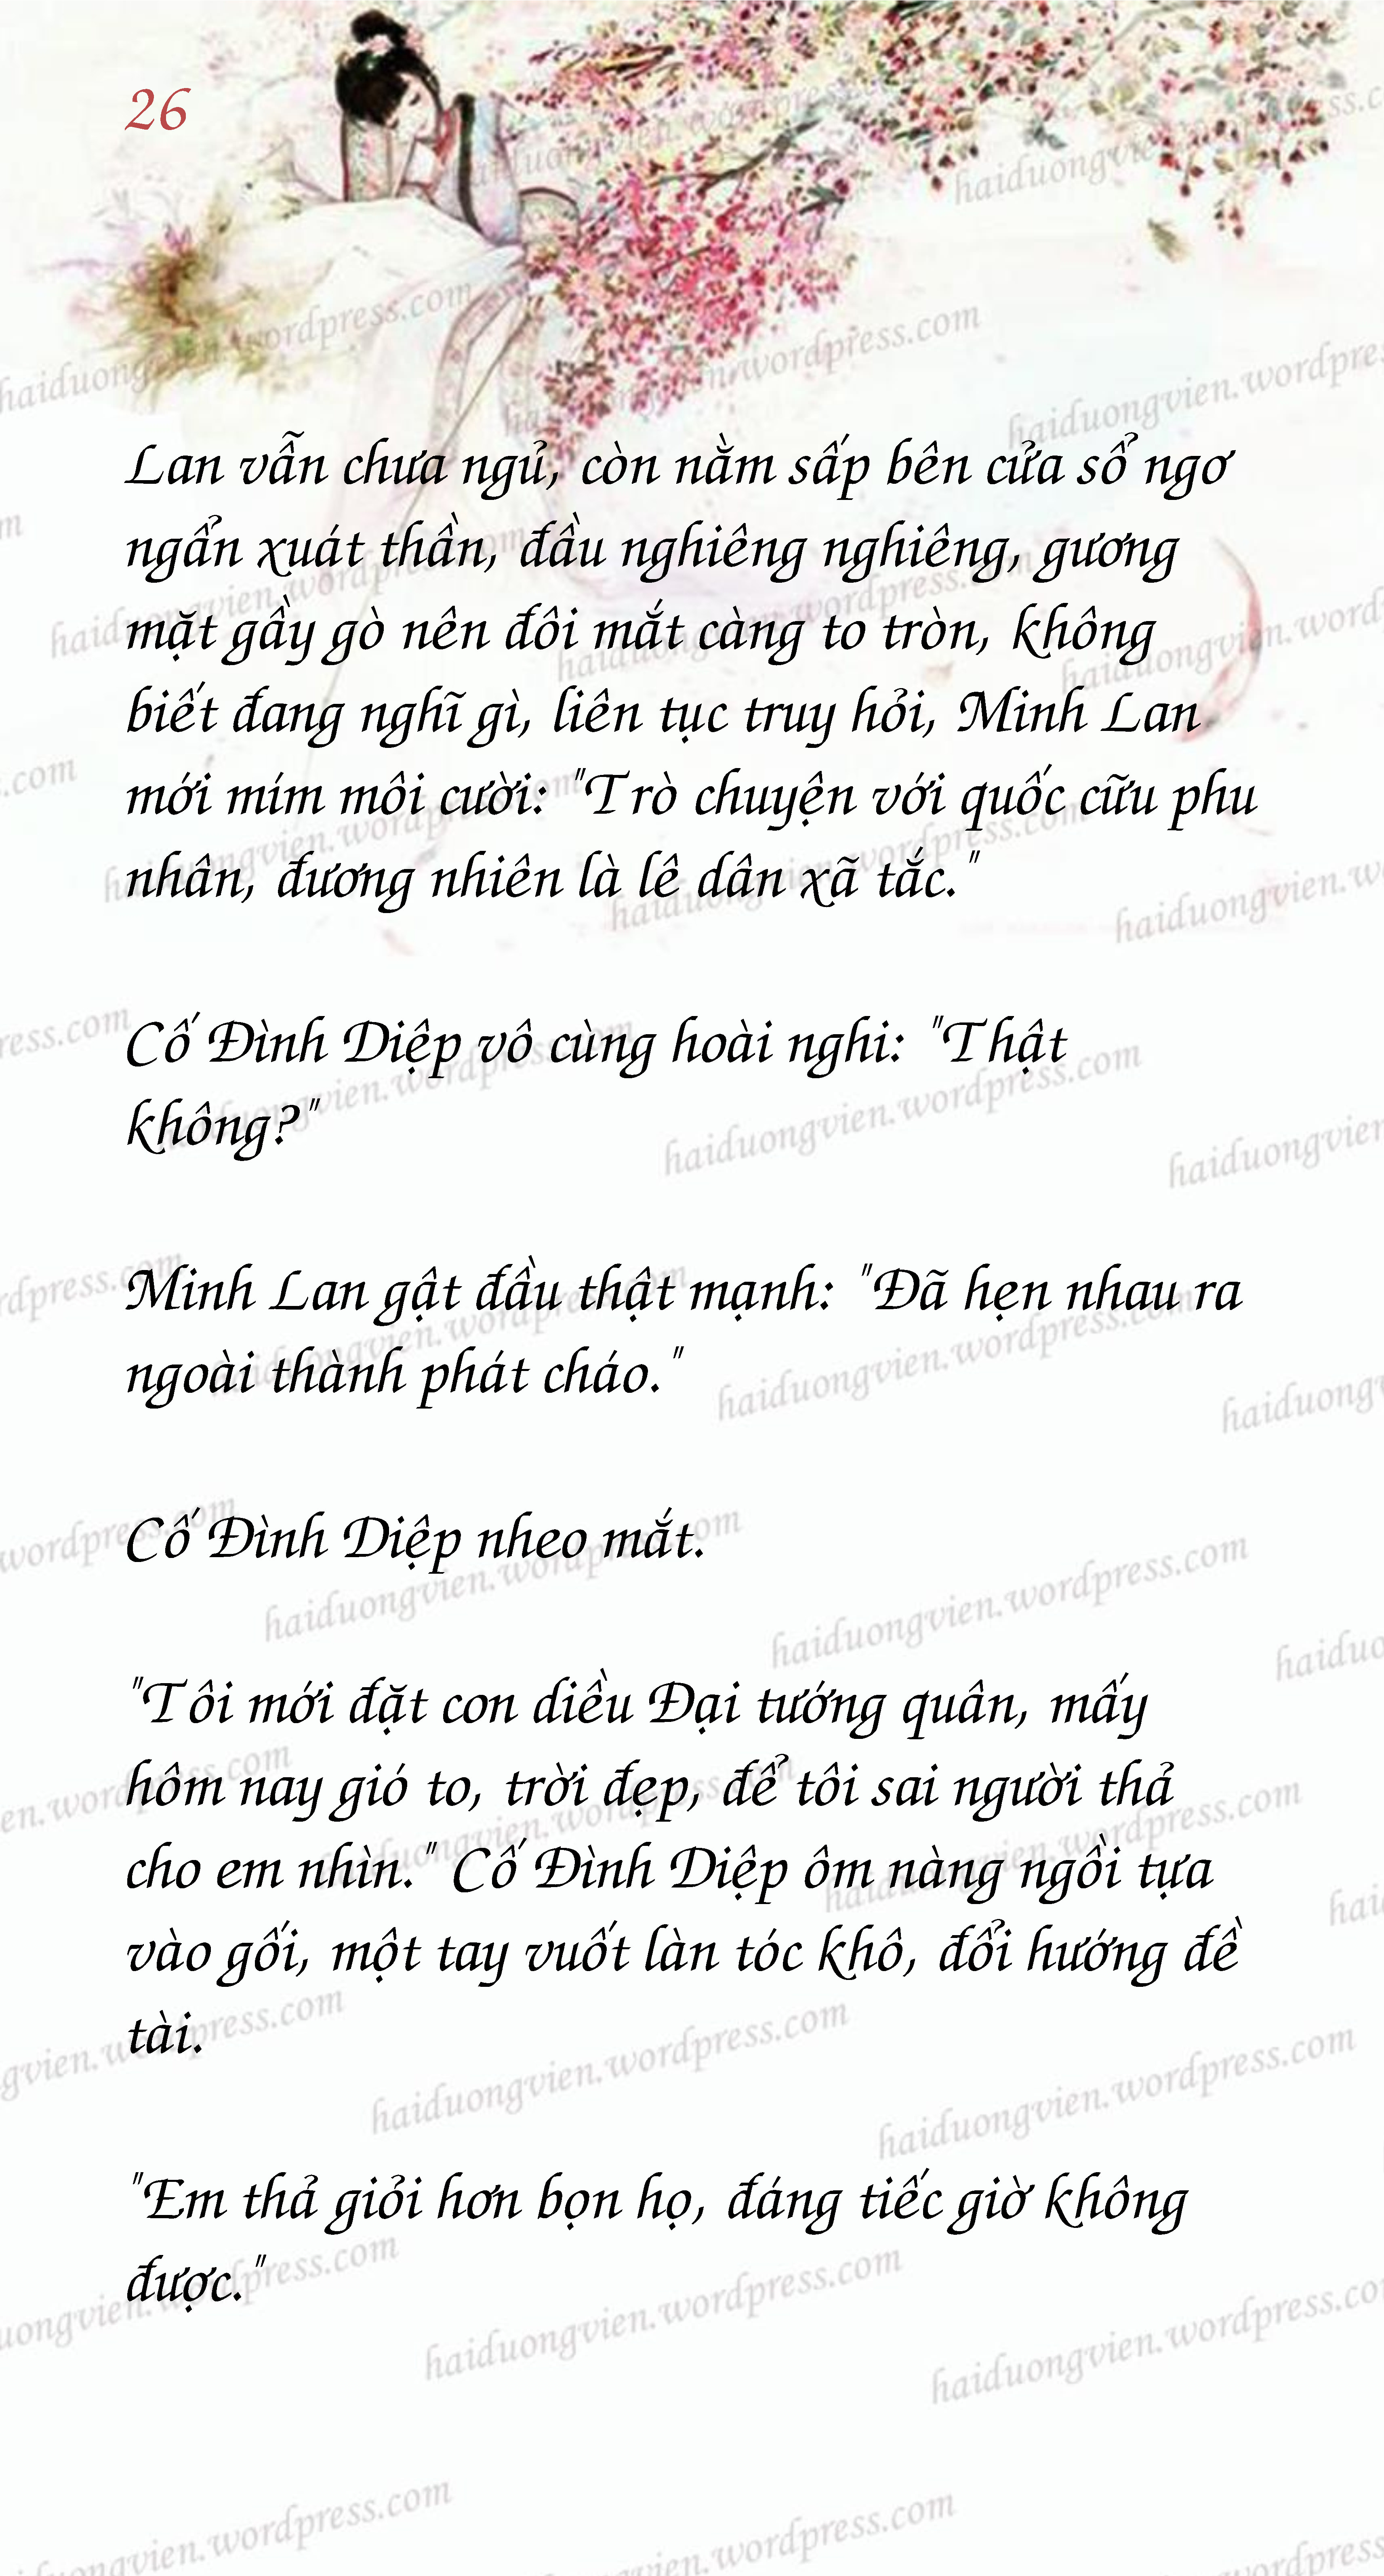 Mau_Page26